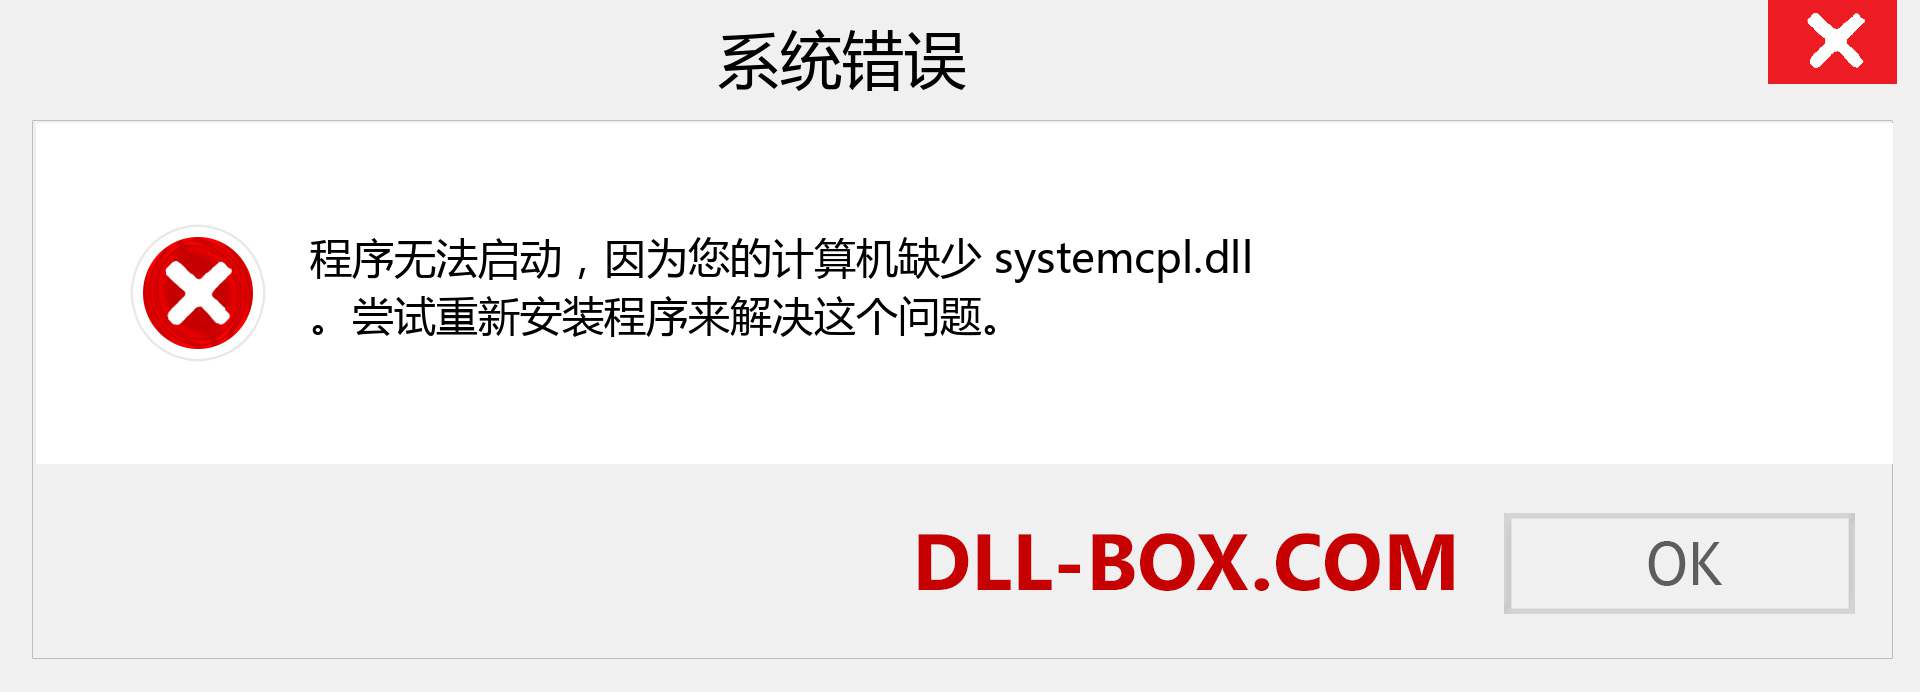 systemcpl.dll 文件丢失？。 适用于 Windows 7、8、10 的下载 - 修复 Windows、照片、图像上的 systemcpl dll 丢失错误